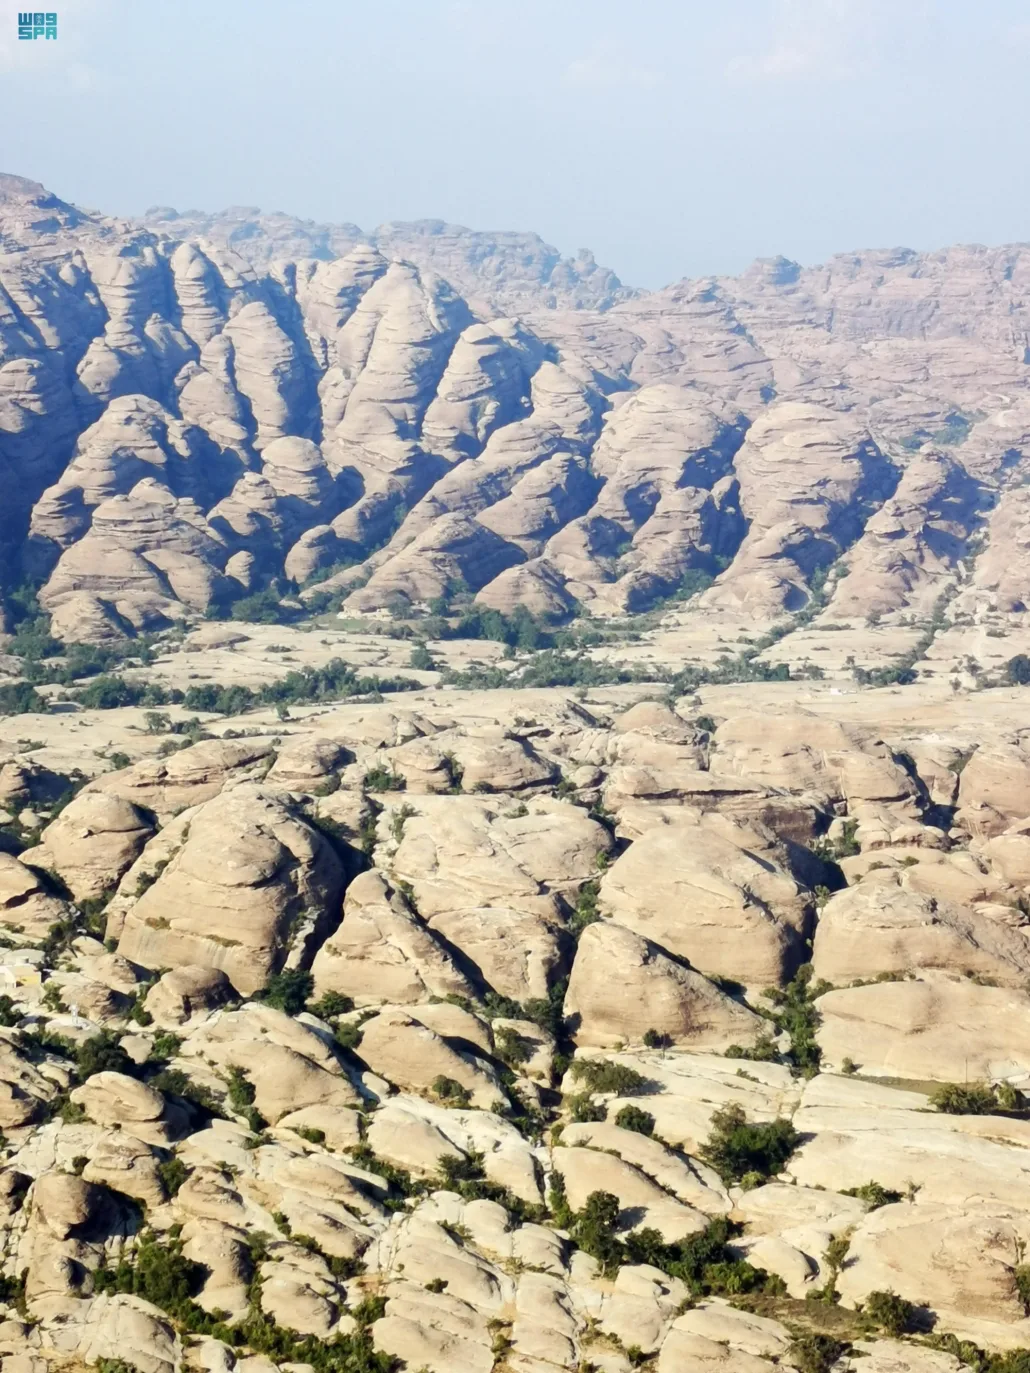  البيئات القديمة لجبال القهر تم استنتاجها من دراسات جيولوجية سابقة للمنطقة